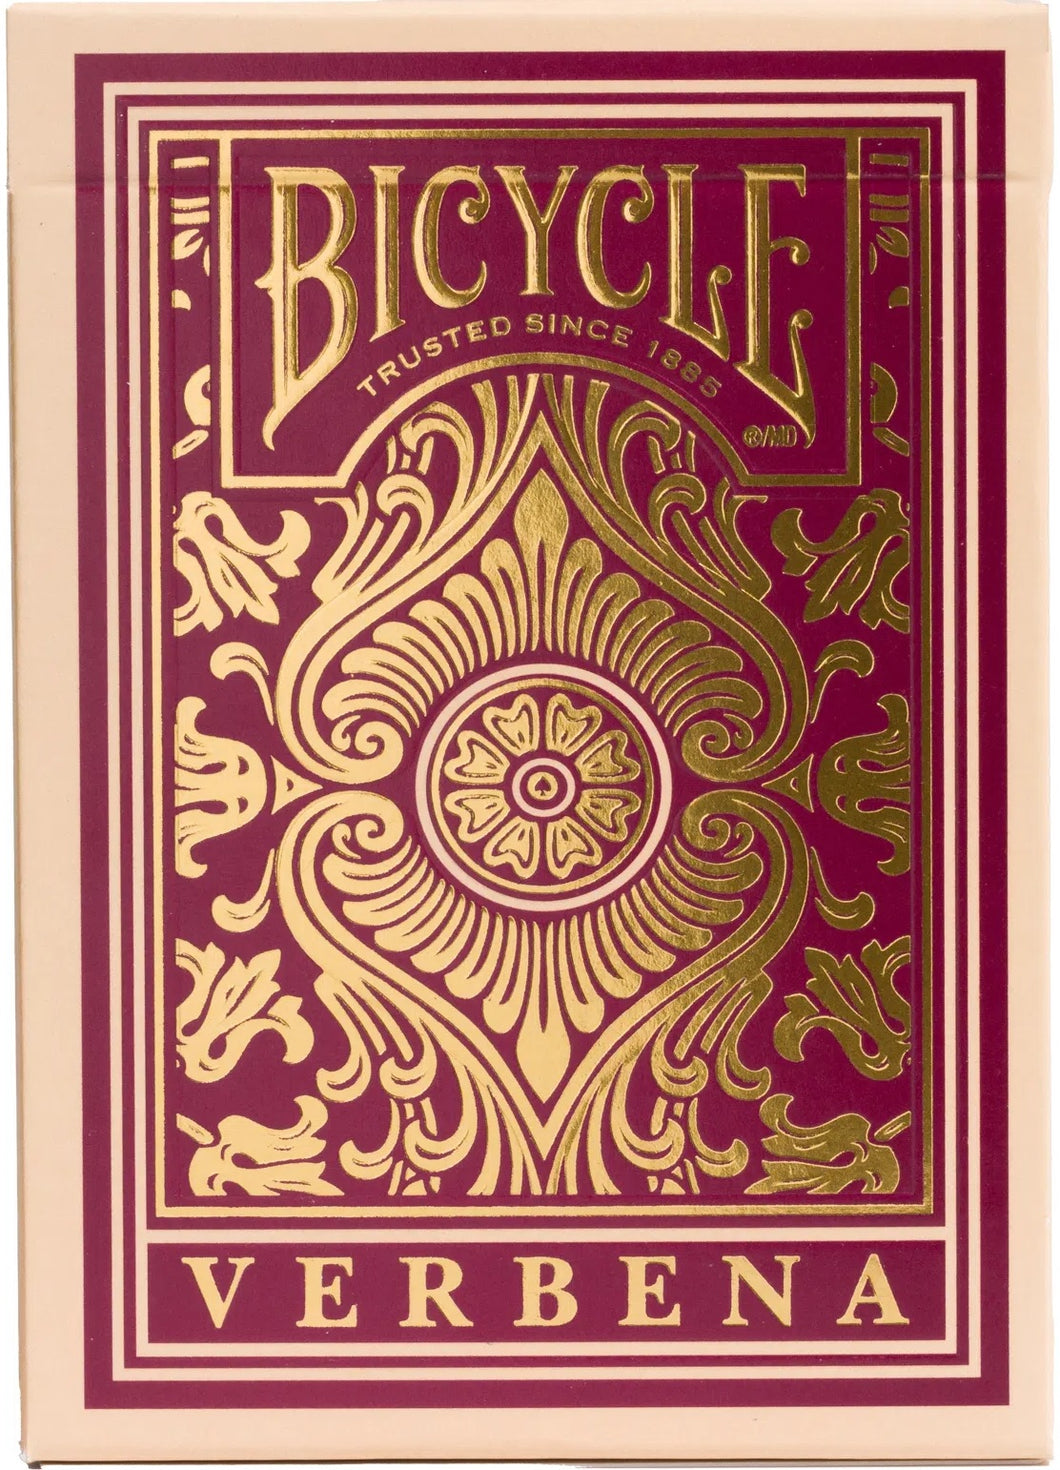 Bicycle Playing Cards - Verbena